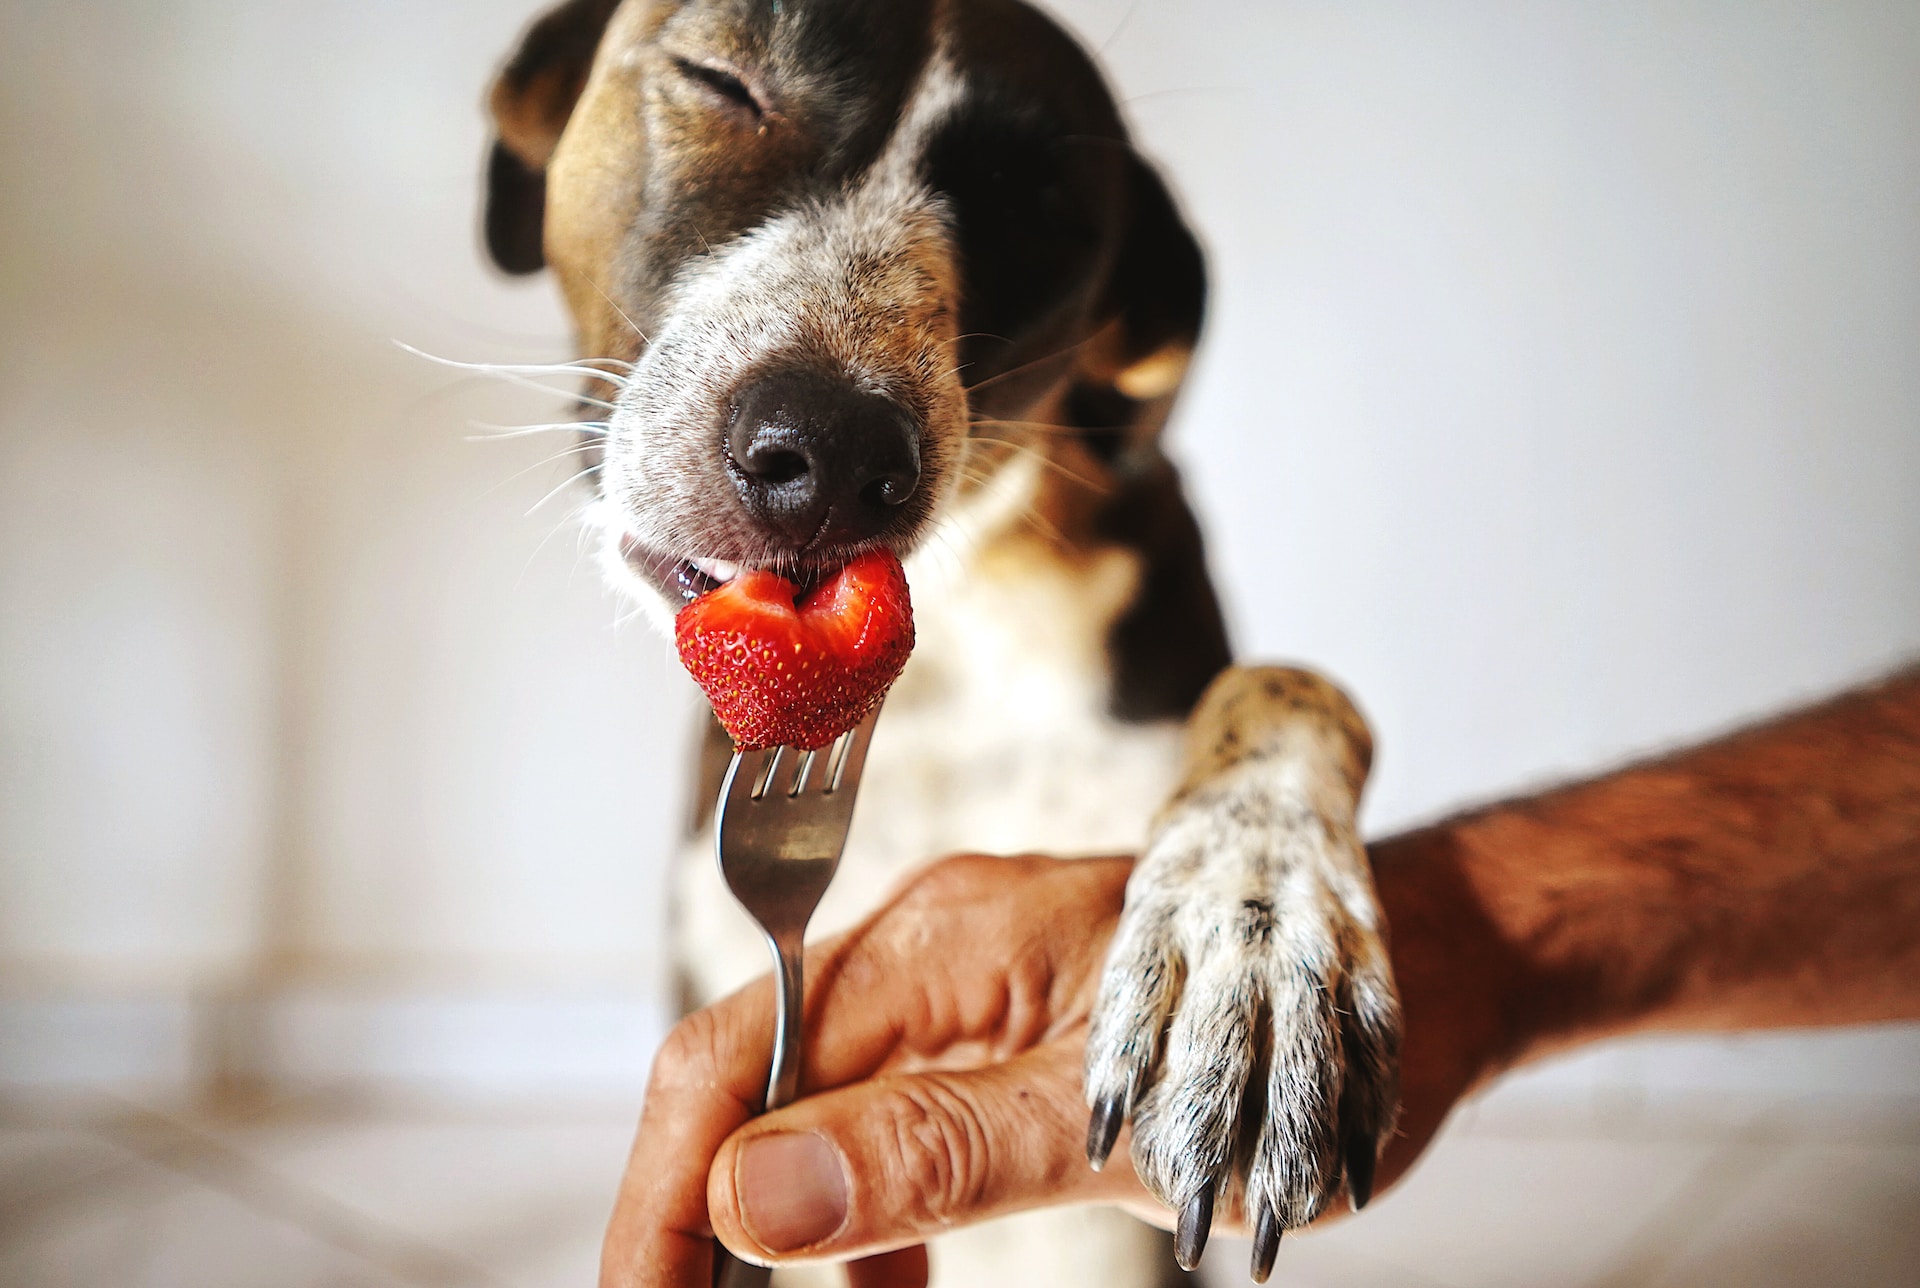 Τα φρούτα που μπορεί να φάει ο σκύλος σου - Ποια πρέπει να αποφεύγεις